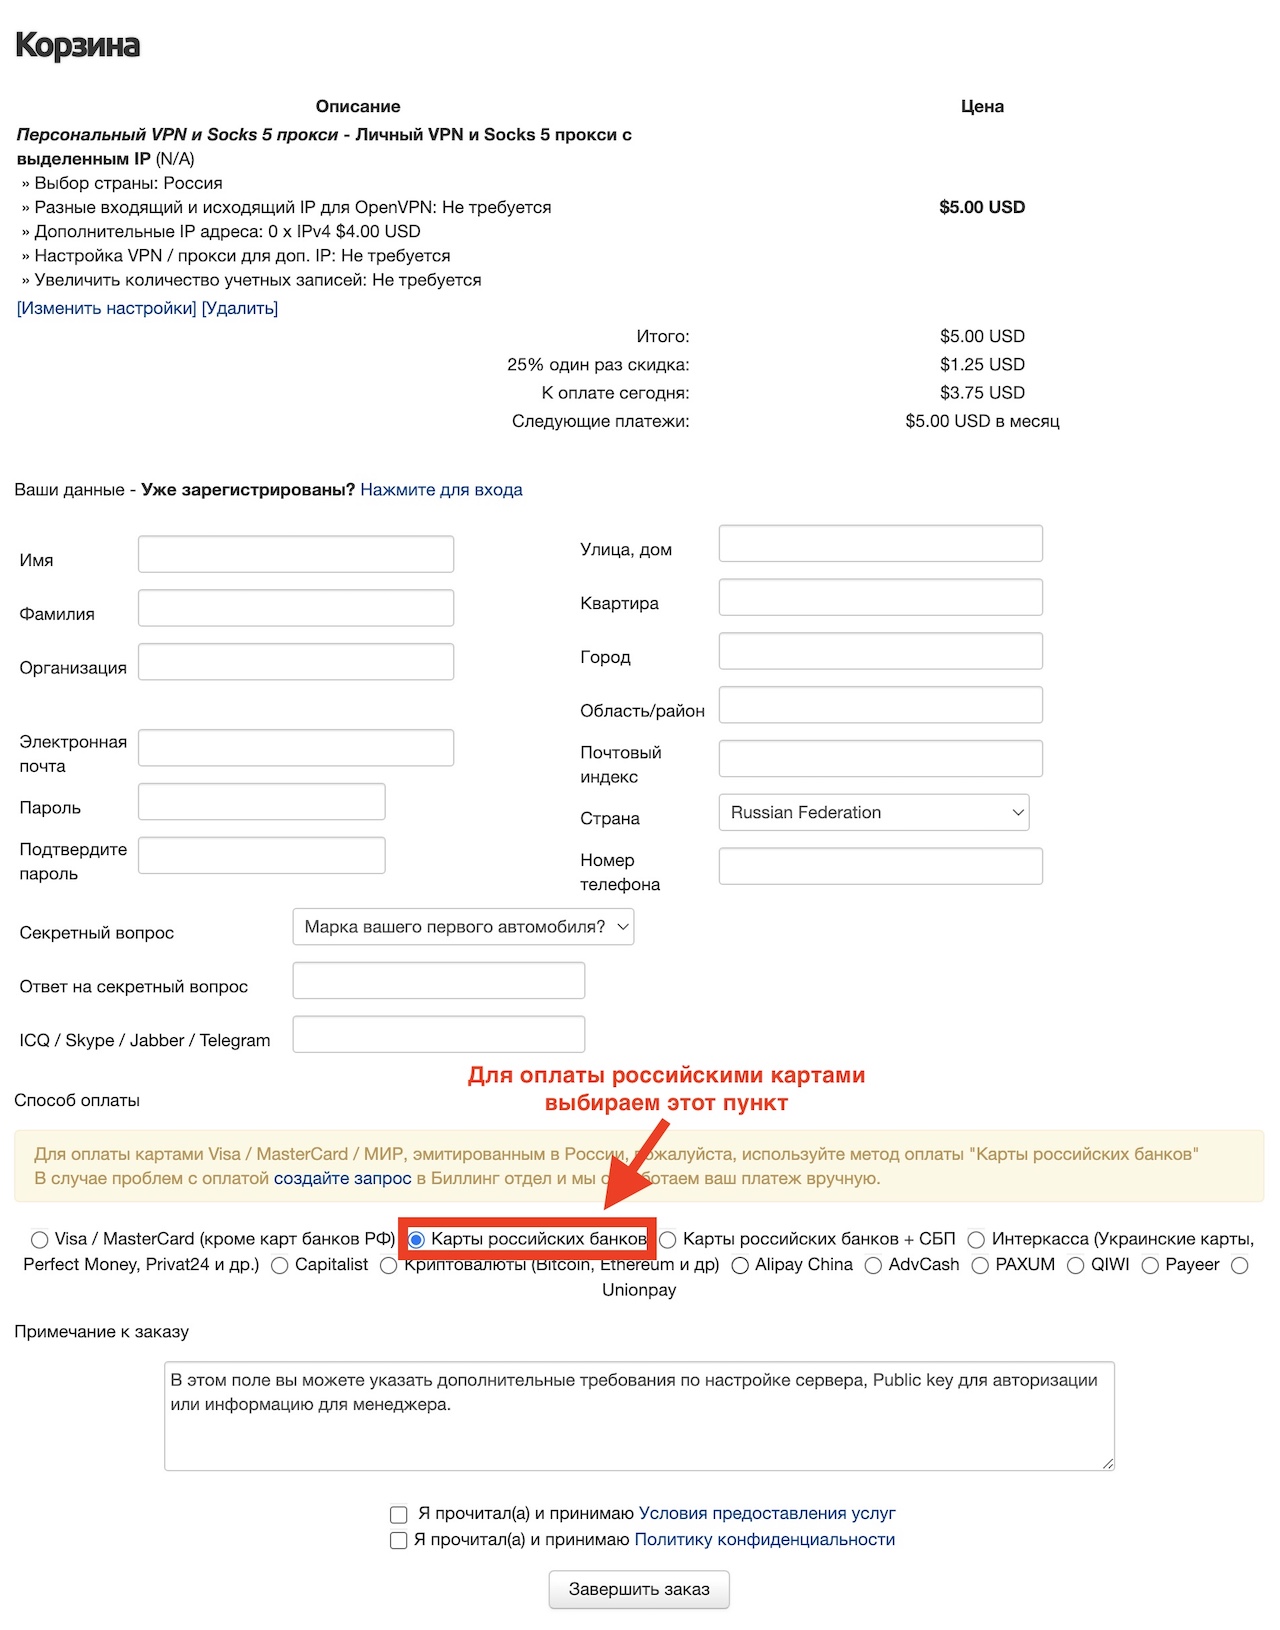 Оплата за VPN картами РФ